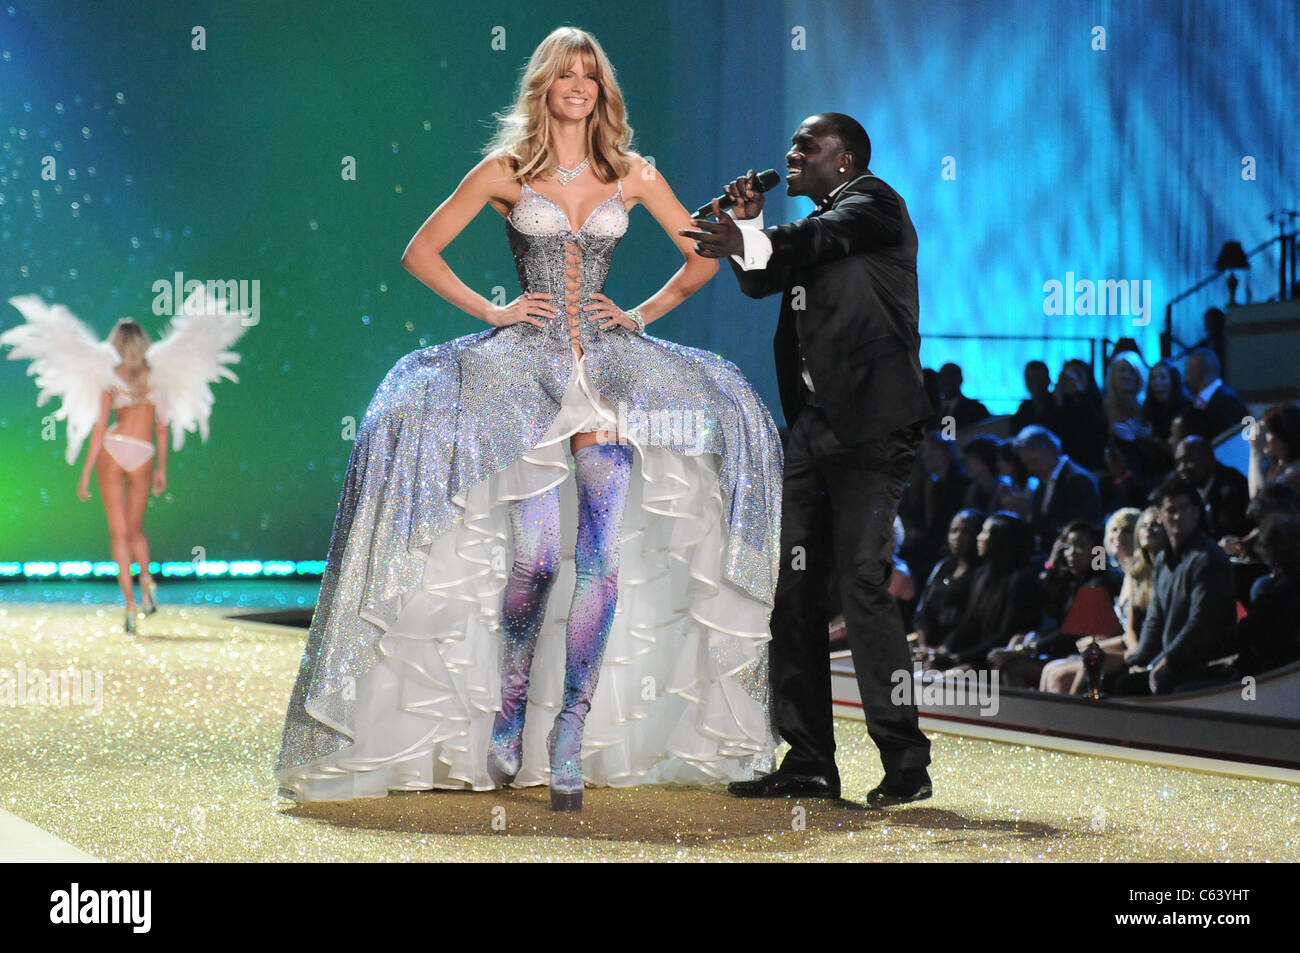 Julia Stegner, Akon sulla pista per la Victoria's Secret Fashion Show - Pista, Lexington Armory, New York, NY Novembre 10, 2010. Foto di: Rob ricco/Everett Collection Foto Stock